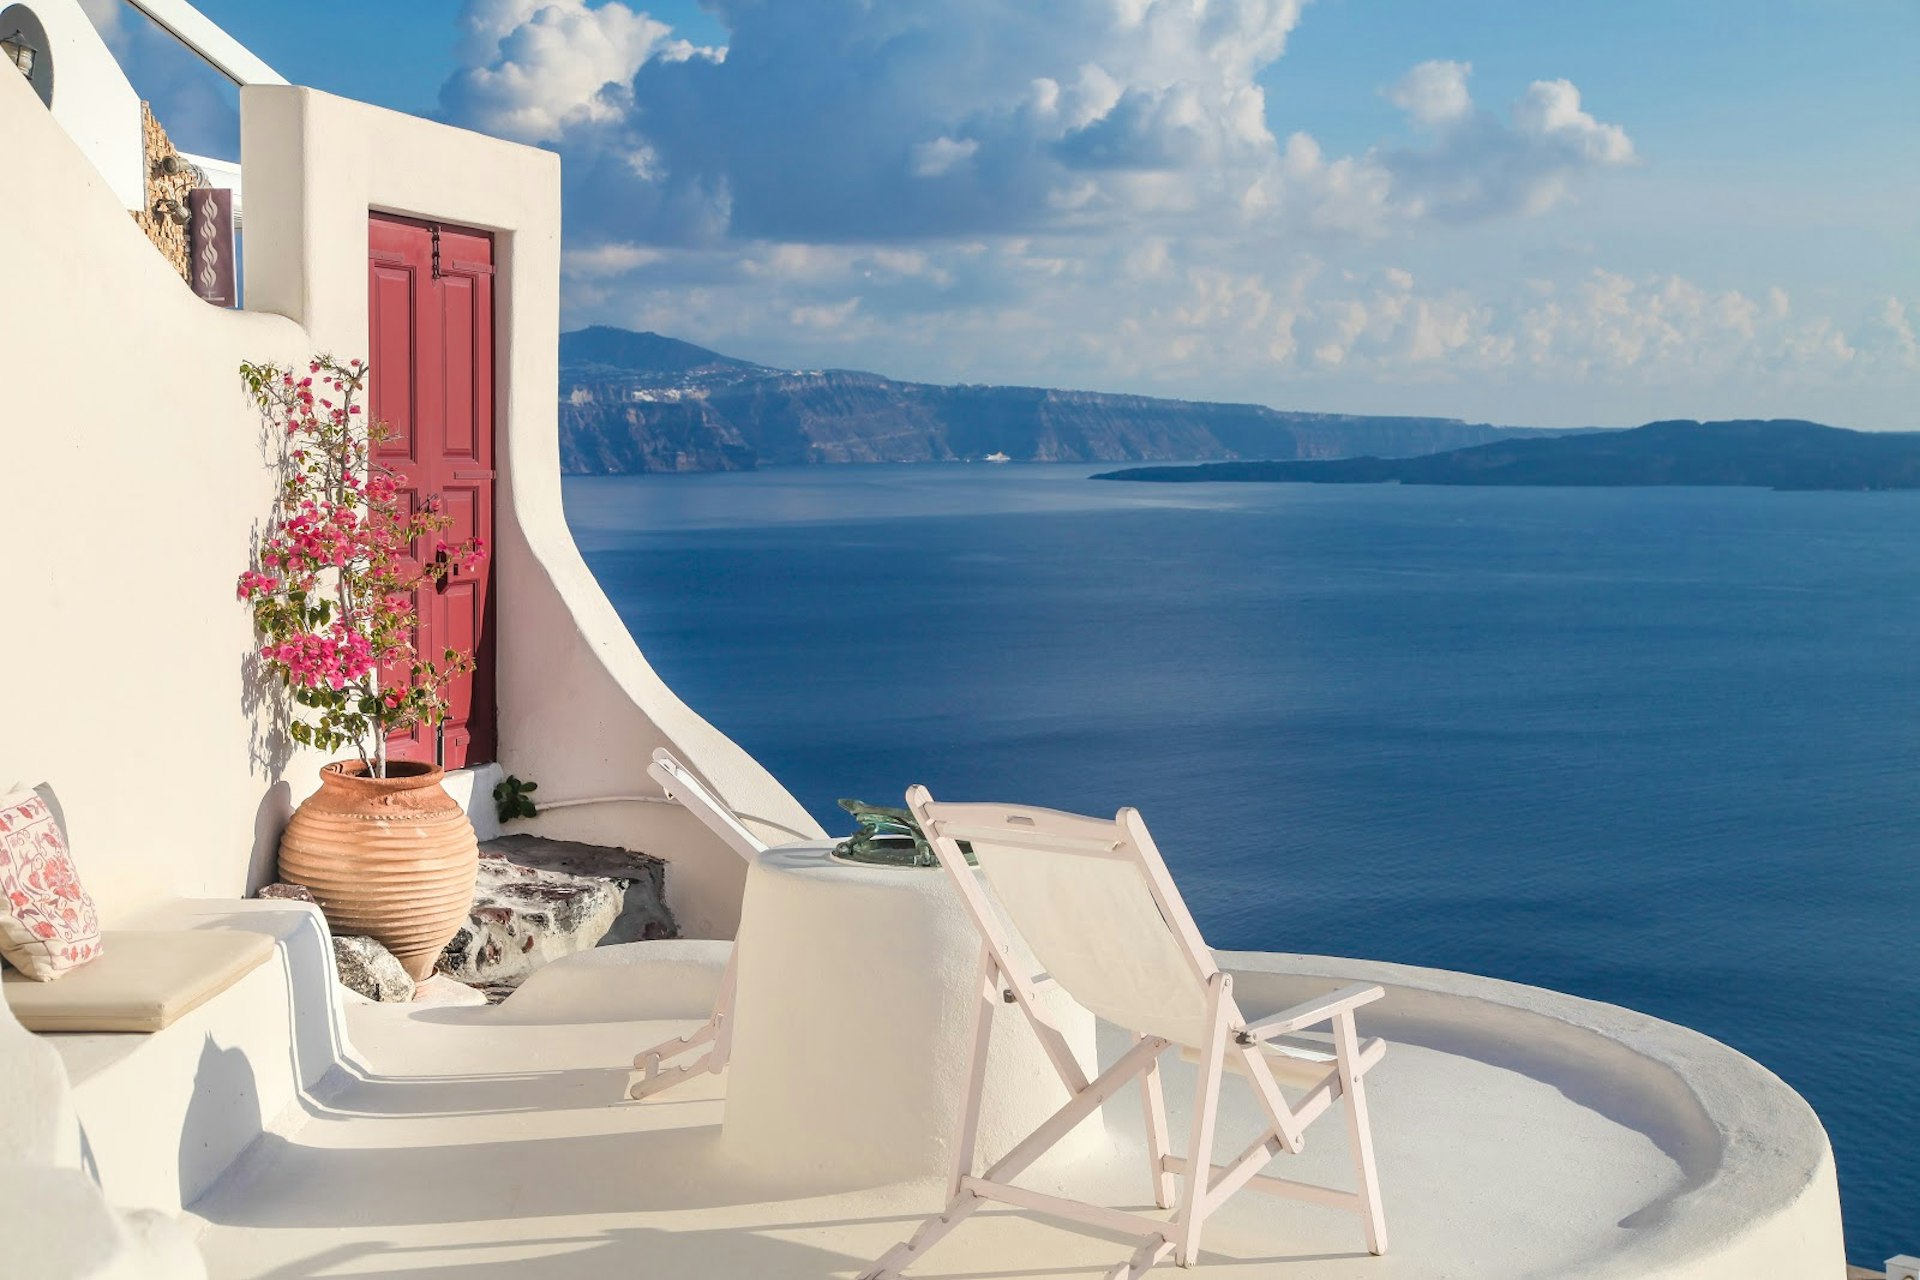 Airbnb-Oia-South-Aegean-Greece.jpg